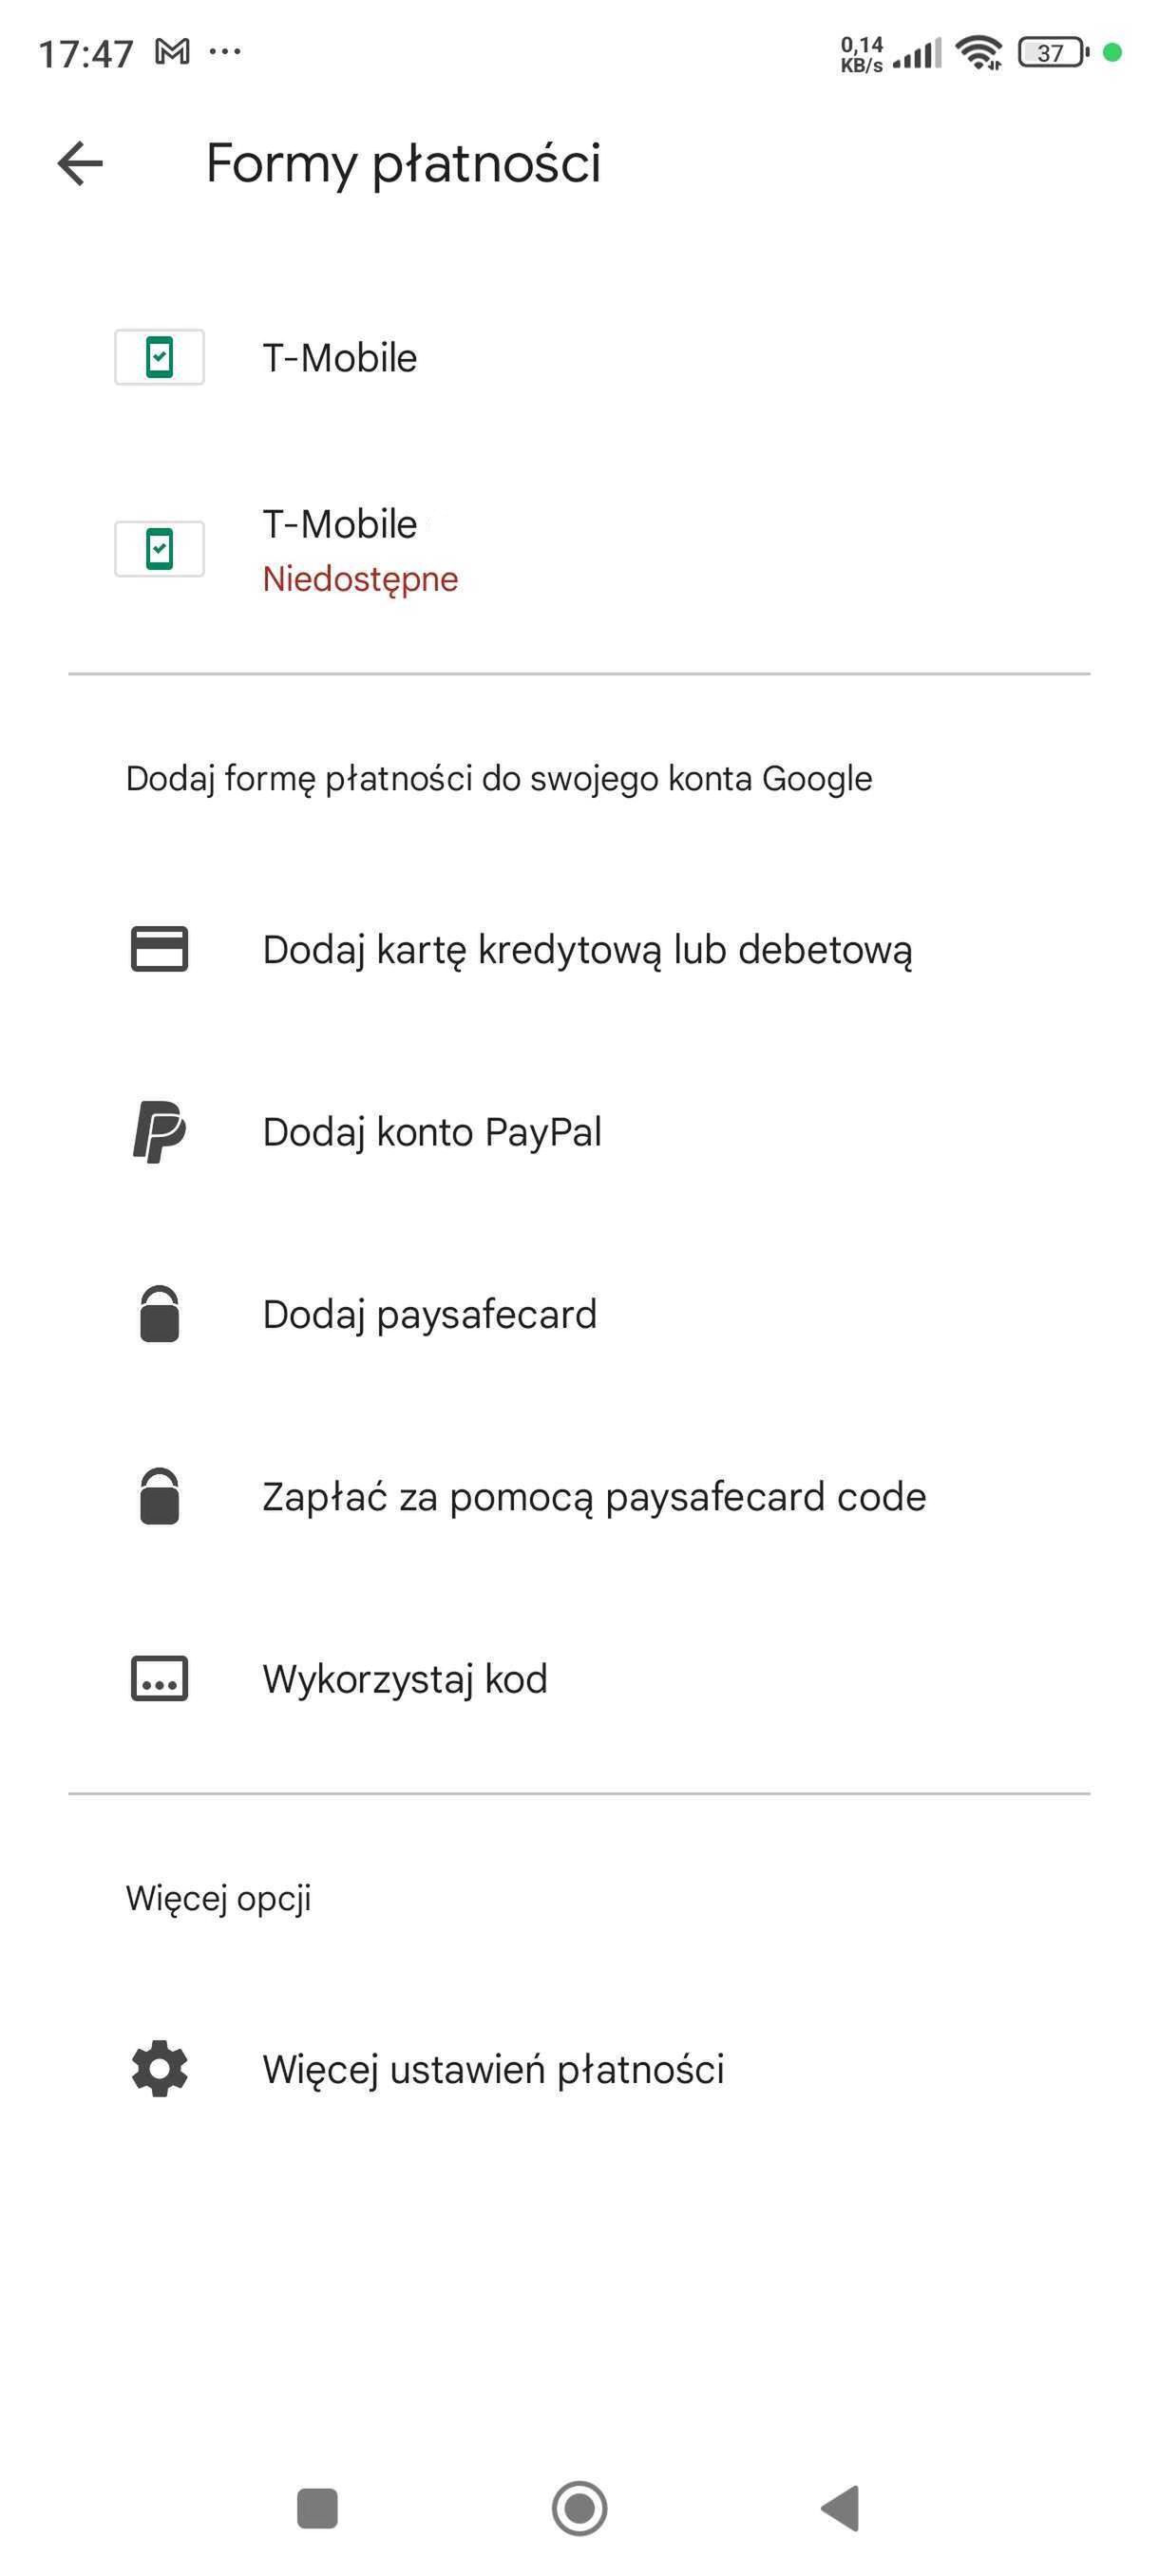 Google Play: jak dodać formę płatności?